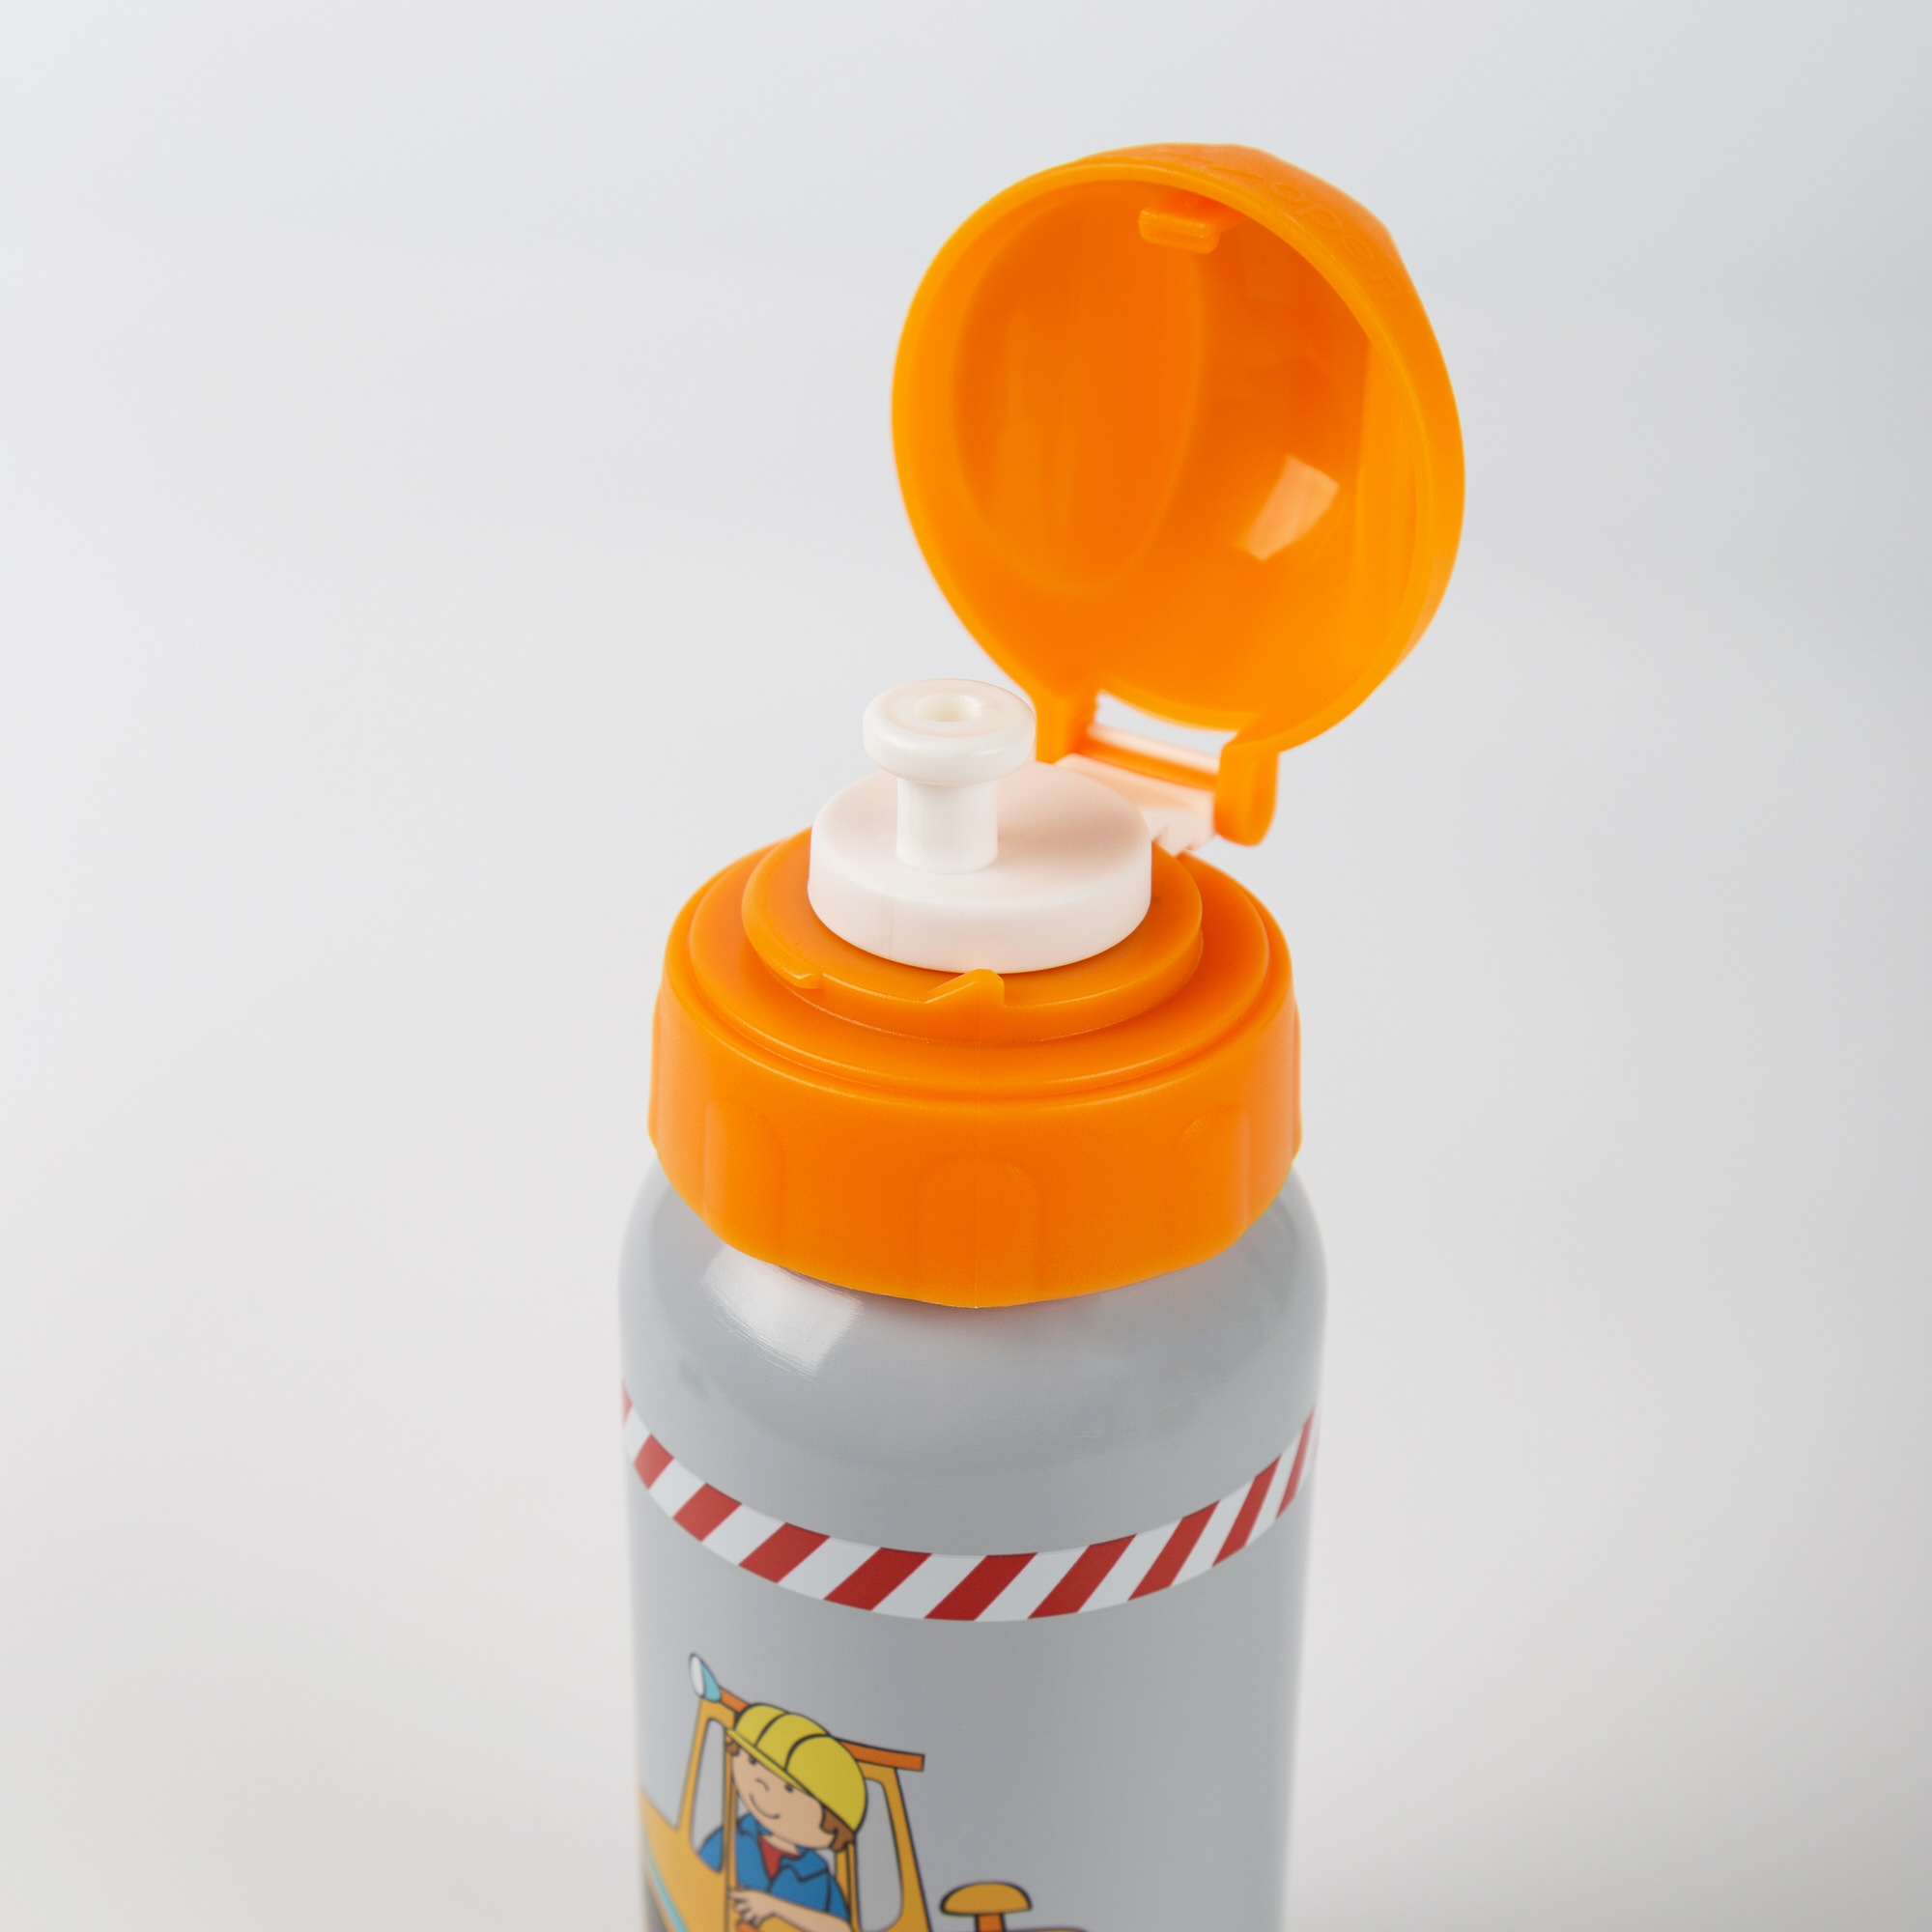 Kinder Edelstahl-Trinkflasche Bodo Bagger